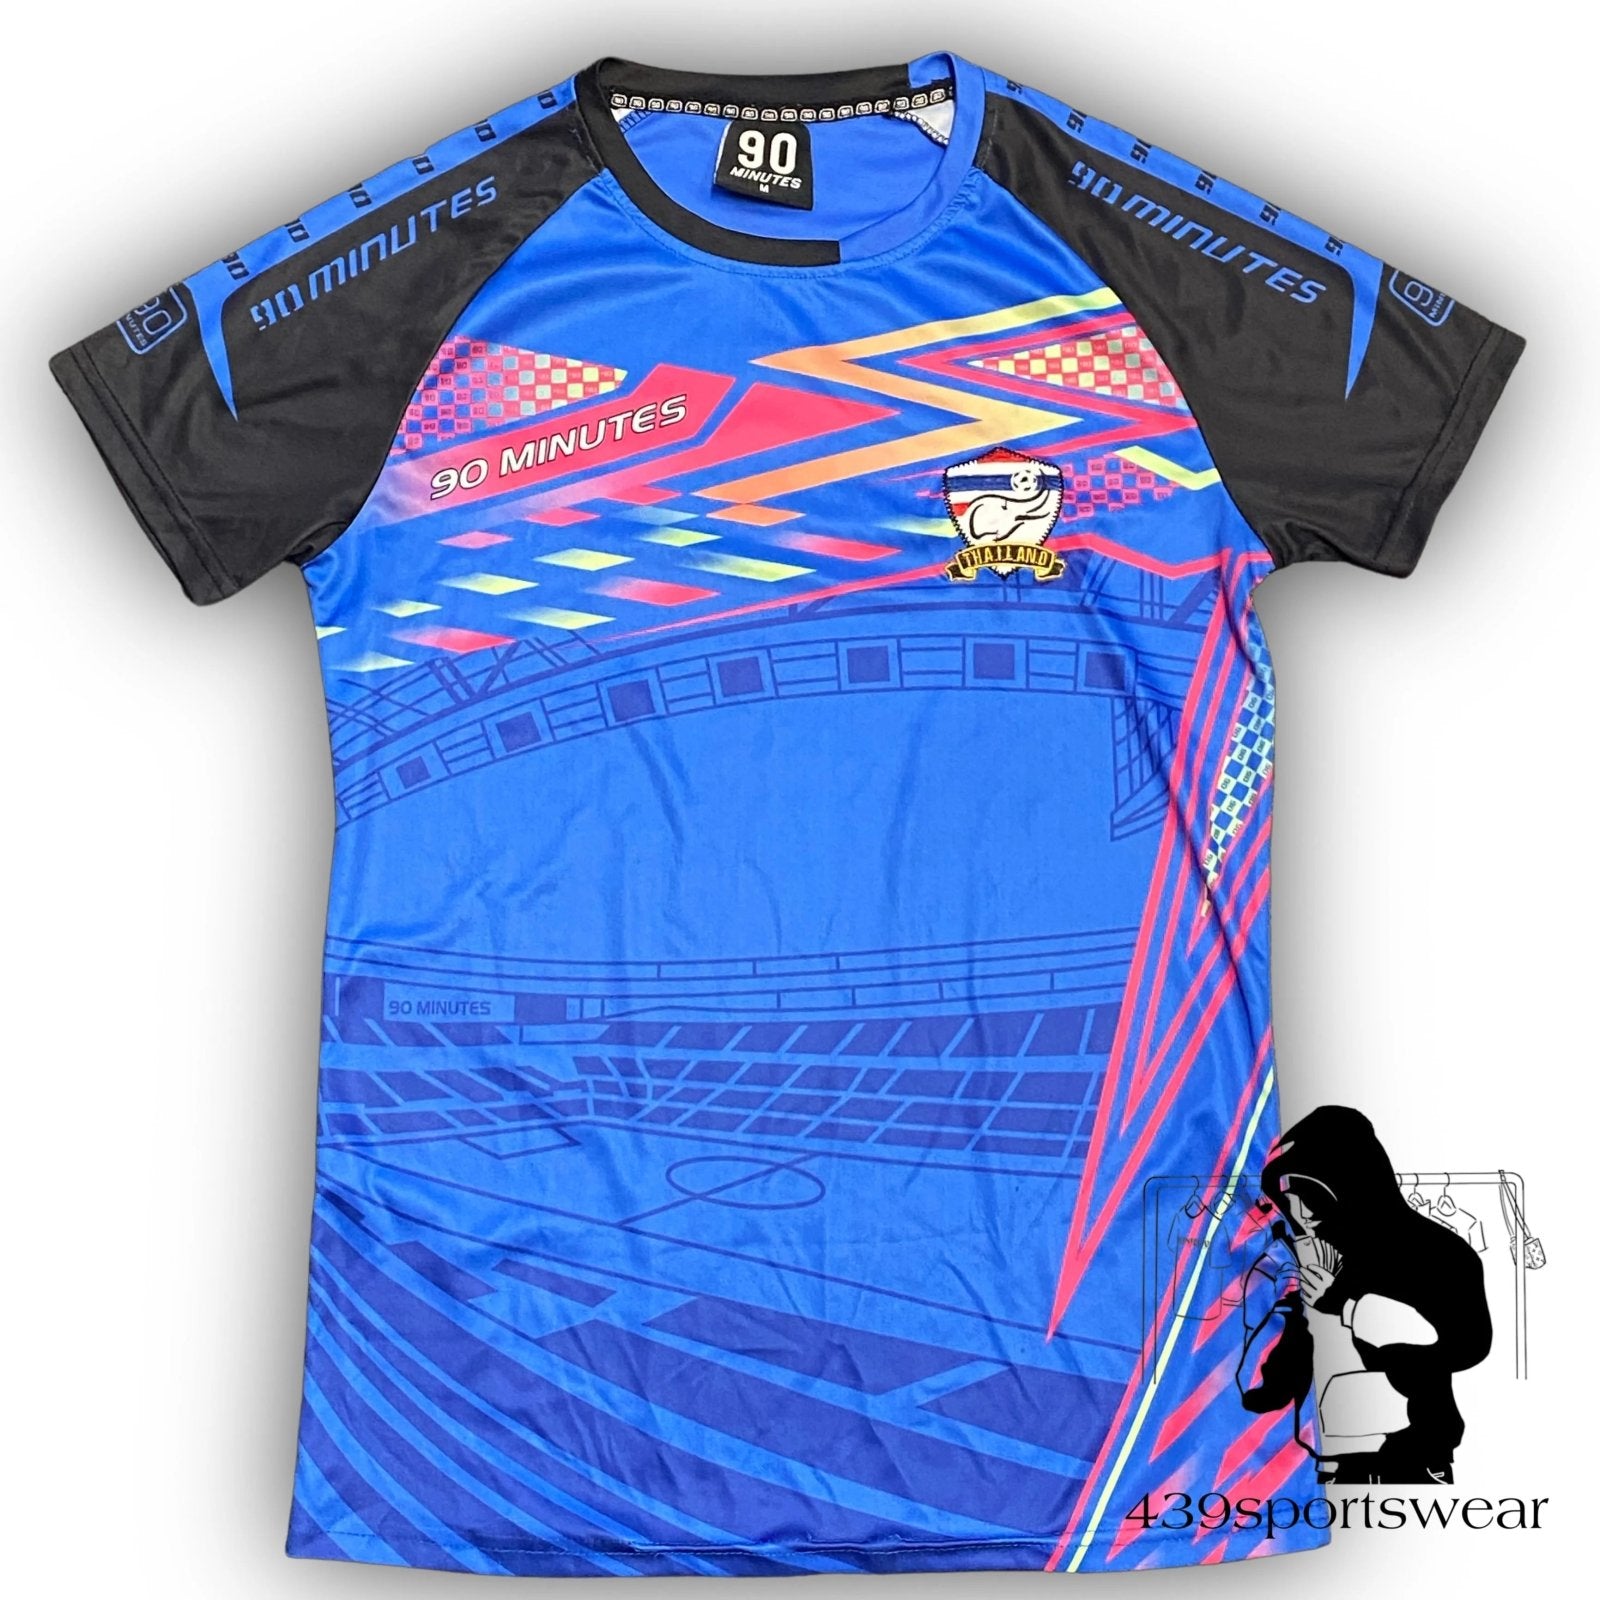 Thailand Yamaha jersey – 439sportswear